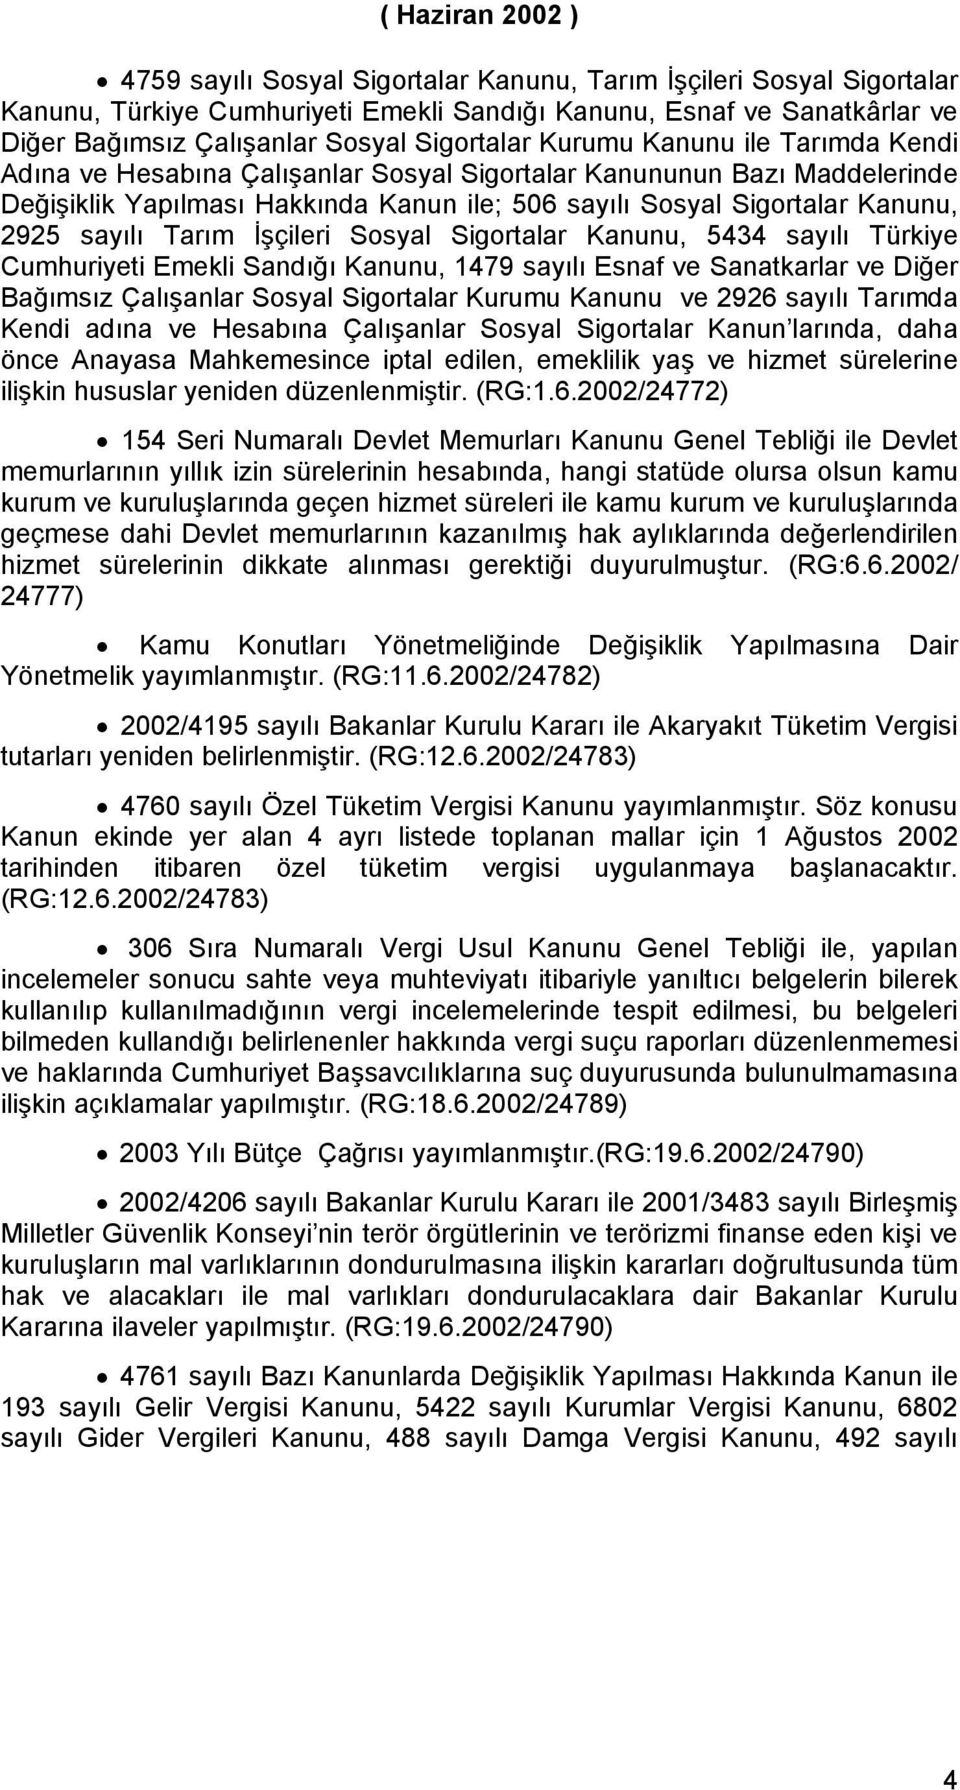 2925 sayılı Tarım İşçileri Sosyal Sigortalar Kanunu, 5434 sayılı Türkiye Cumhuriyeti Emekli Sandığı Kanunu, 1479 sayılı Esnaf ve Sanatkarlar ve Diğer Bağımsız Çalışanlar Sosyal Sigortalar Kurumu